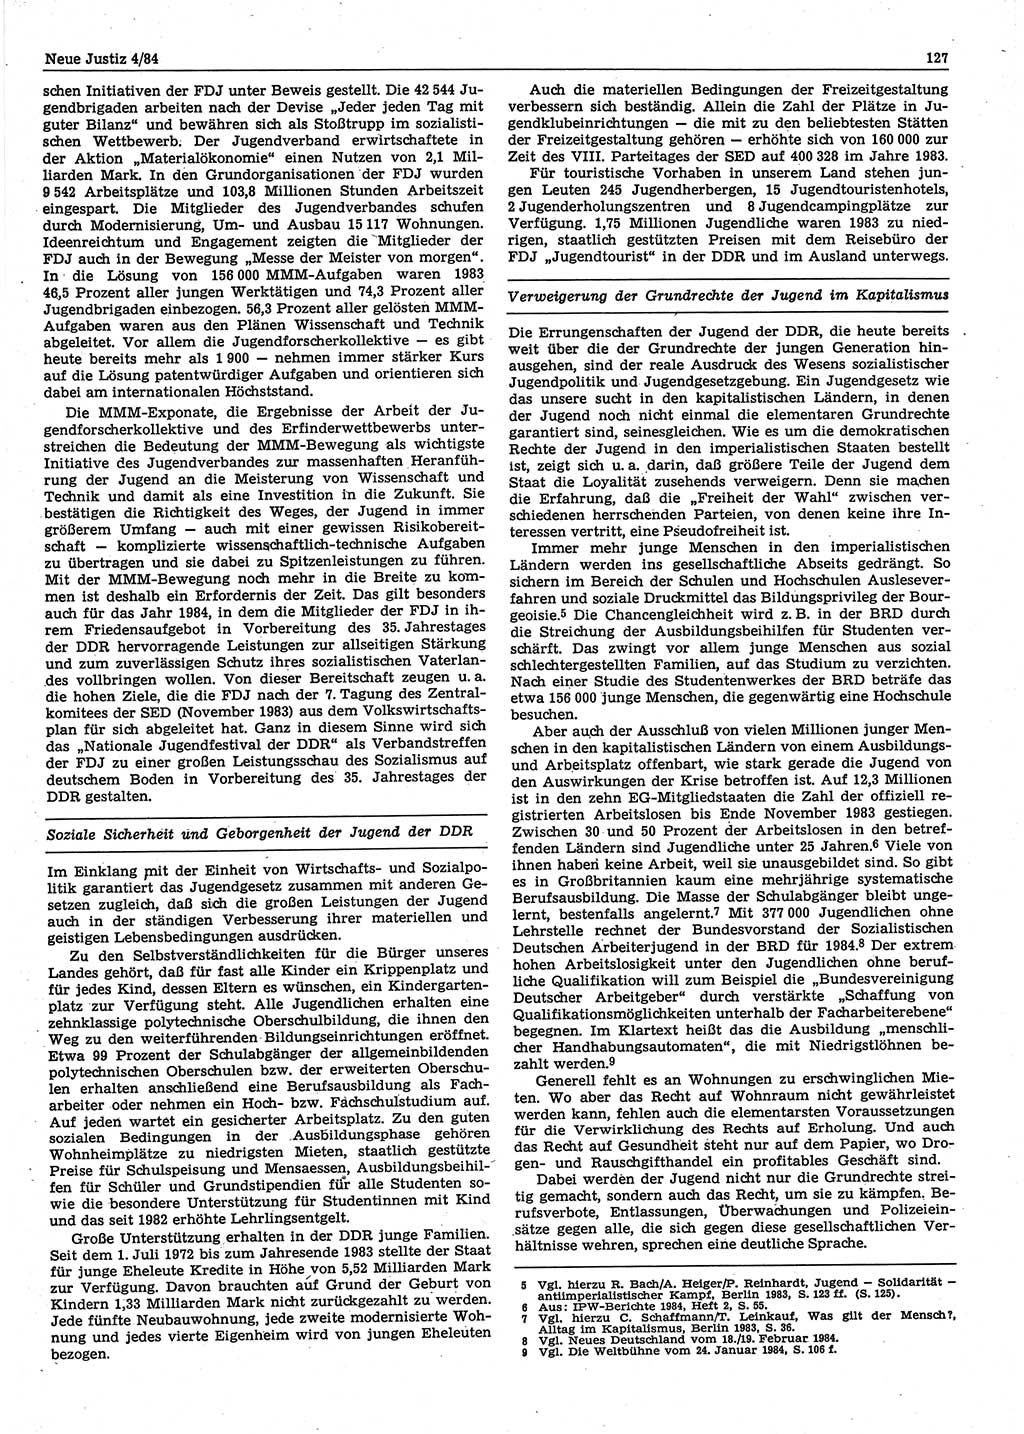 Neue Justiz (NJ), Zeitschrift für sozialistisches Recht und Gesetzlichkeit [Deutsche Demokratische Republik (DDR)], 38. Jahrgang 1984, Seite 127 (NJ DDR 1984, S. 127)